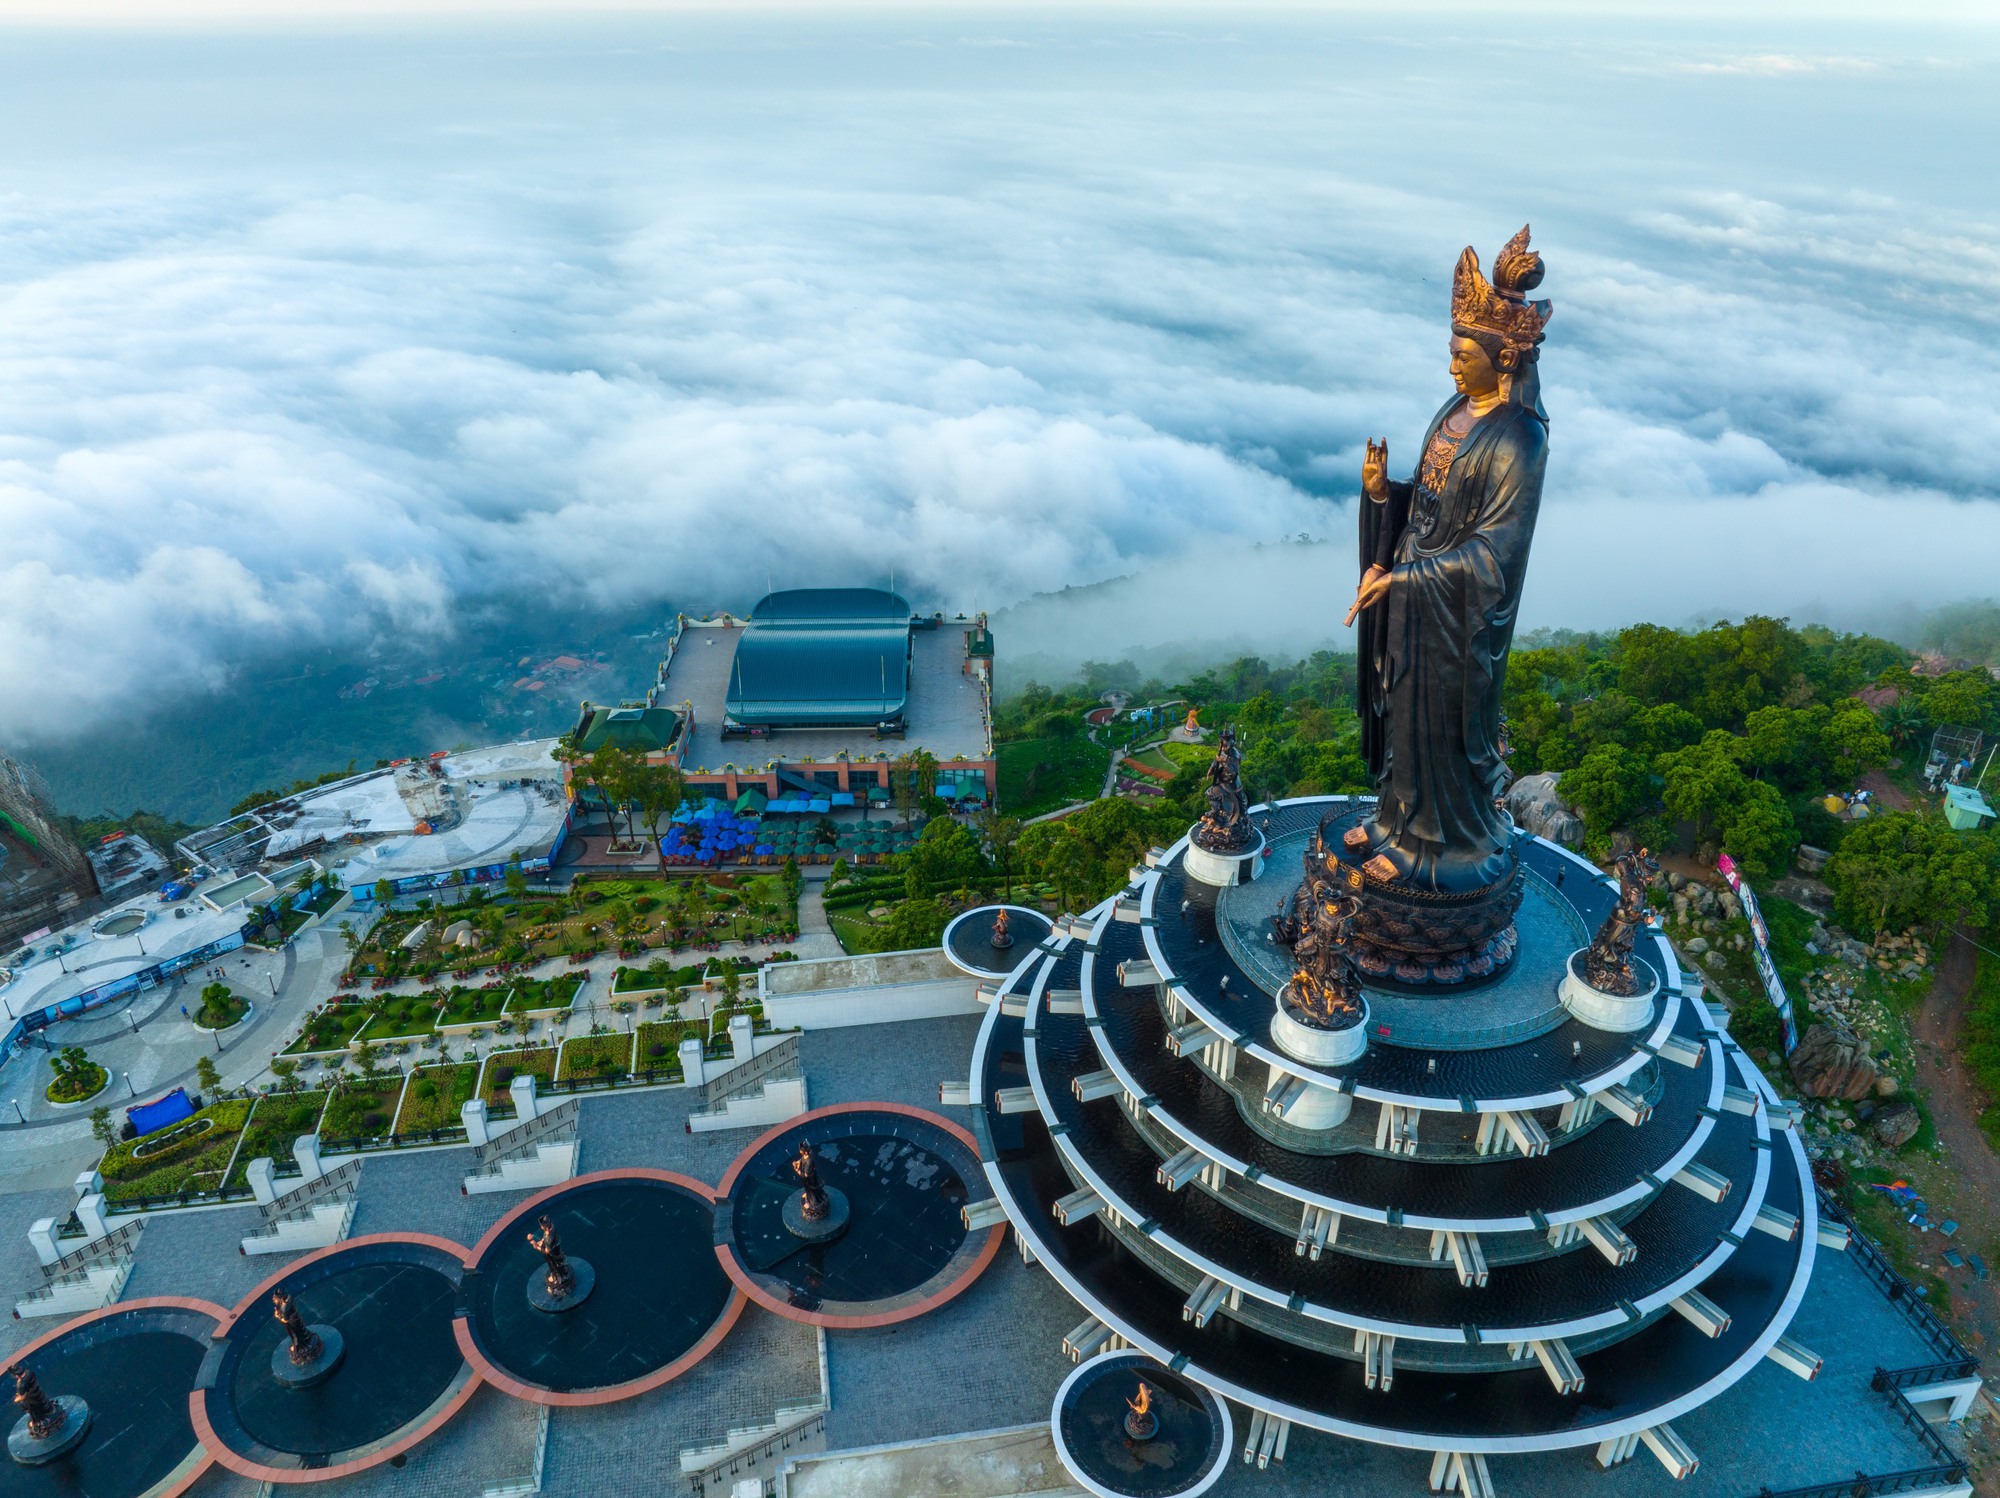 Vì sao núi Bà Đen - nơi có tượng Phật Bà bằng đồng cao nhất Việt Nam lại được mệnh danh là “Đệ nhất Thiên Sơn”? - Ảnh 9.